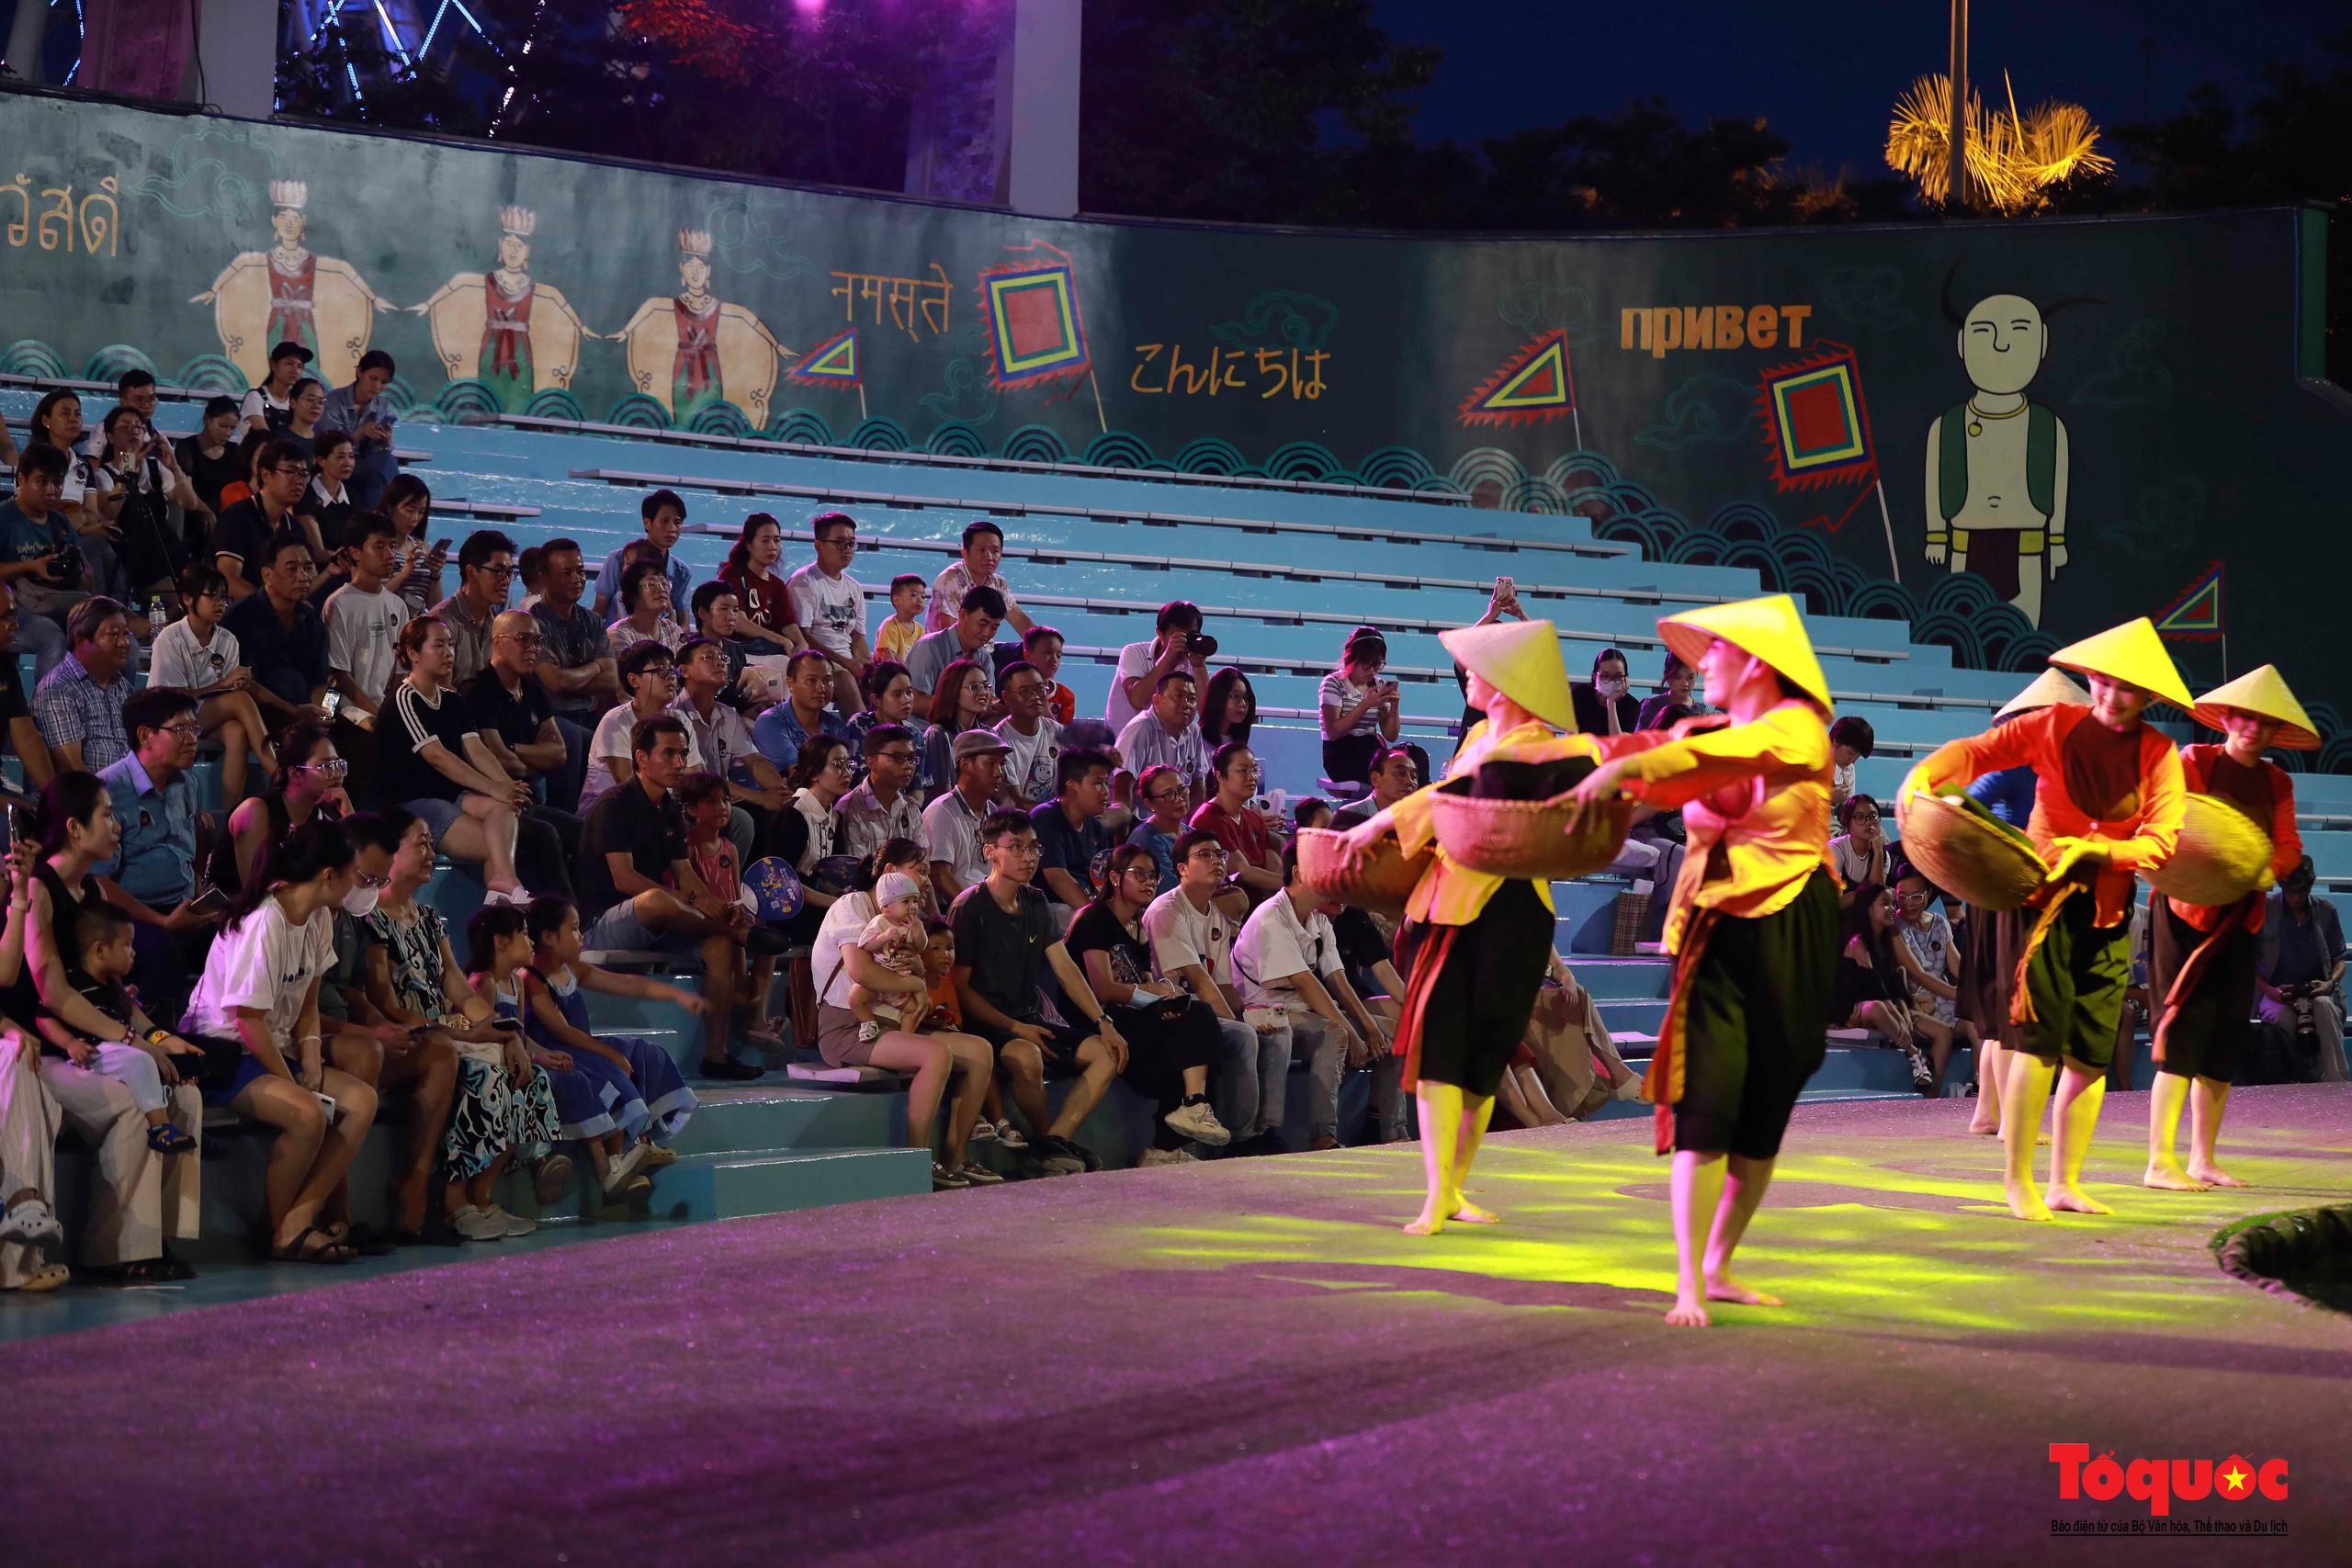 Du khách thích thú khám phá dòng chảy văn hóa Việt tại nhà hát múa rối lớn nhất miền Trung - Ảnh 14.